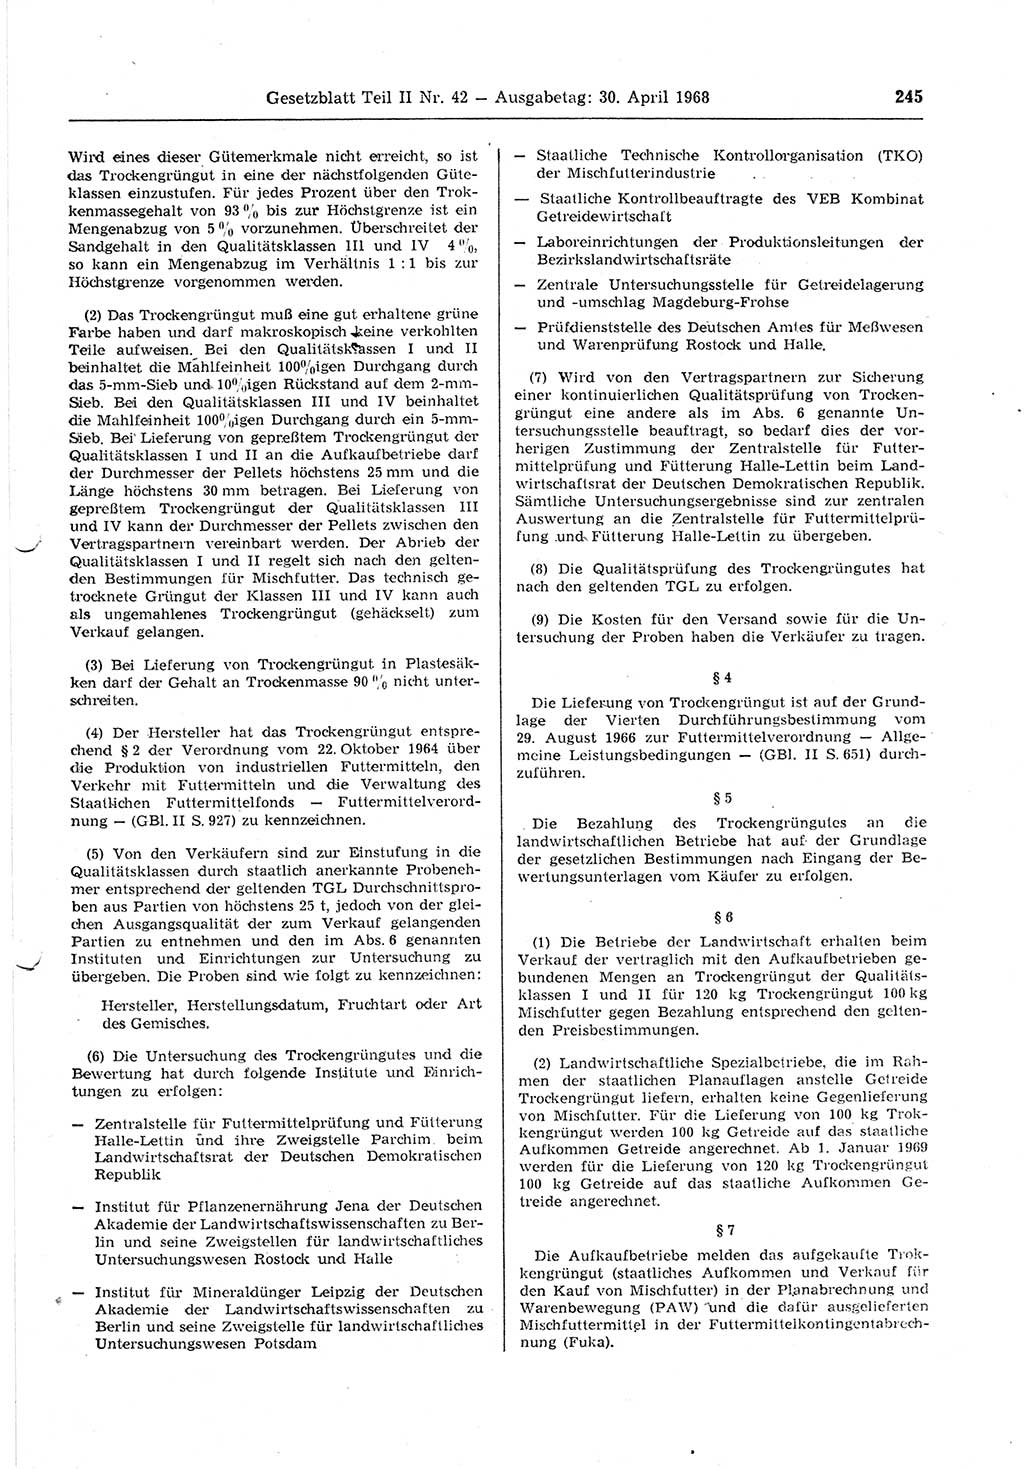 Gesetzblatt (GBl.) der Deutschen Demokratischen Republik (DDR) Teil ⅠⅠ 1968, Seite 245 (GBl. DDR ⅠⅠ 1968, S. 245)